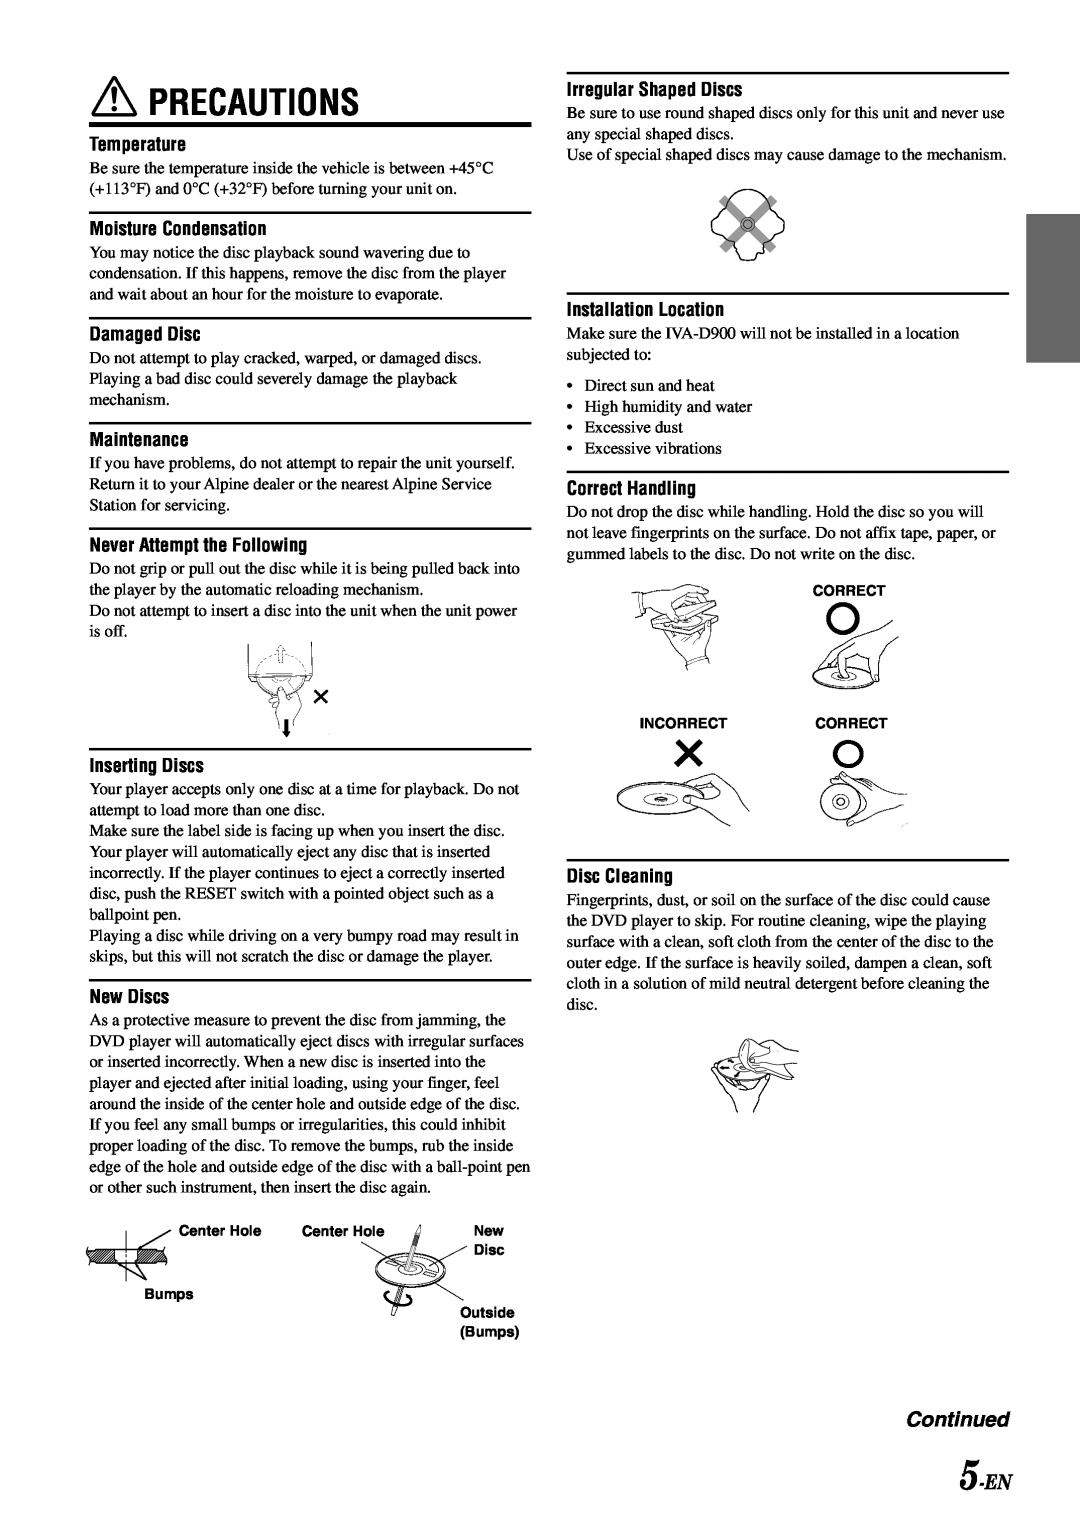 Alpine IVA-D900 owner manual Precautions, 5-EN, Continued 